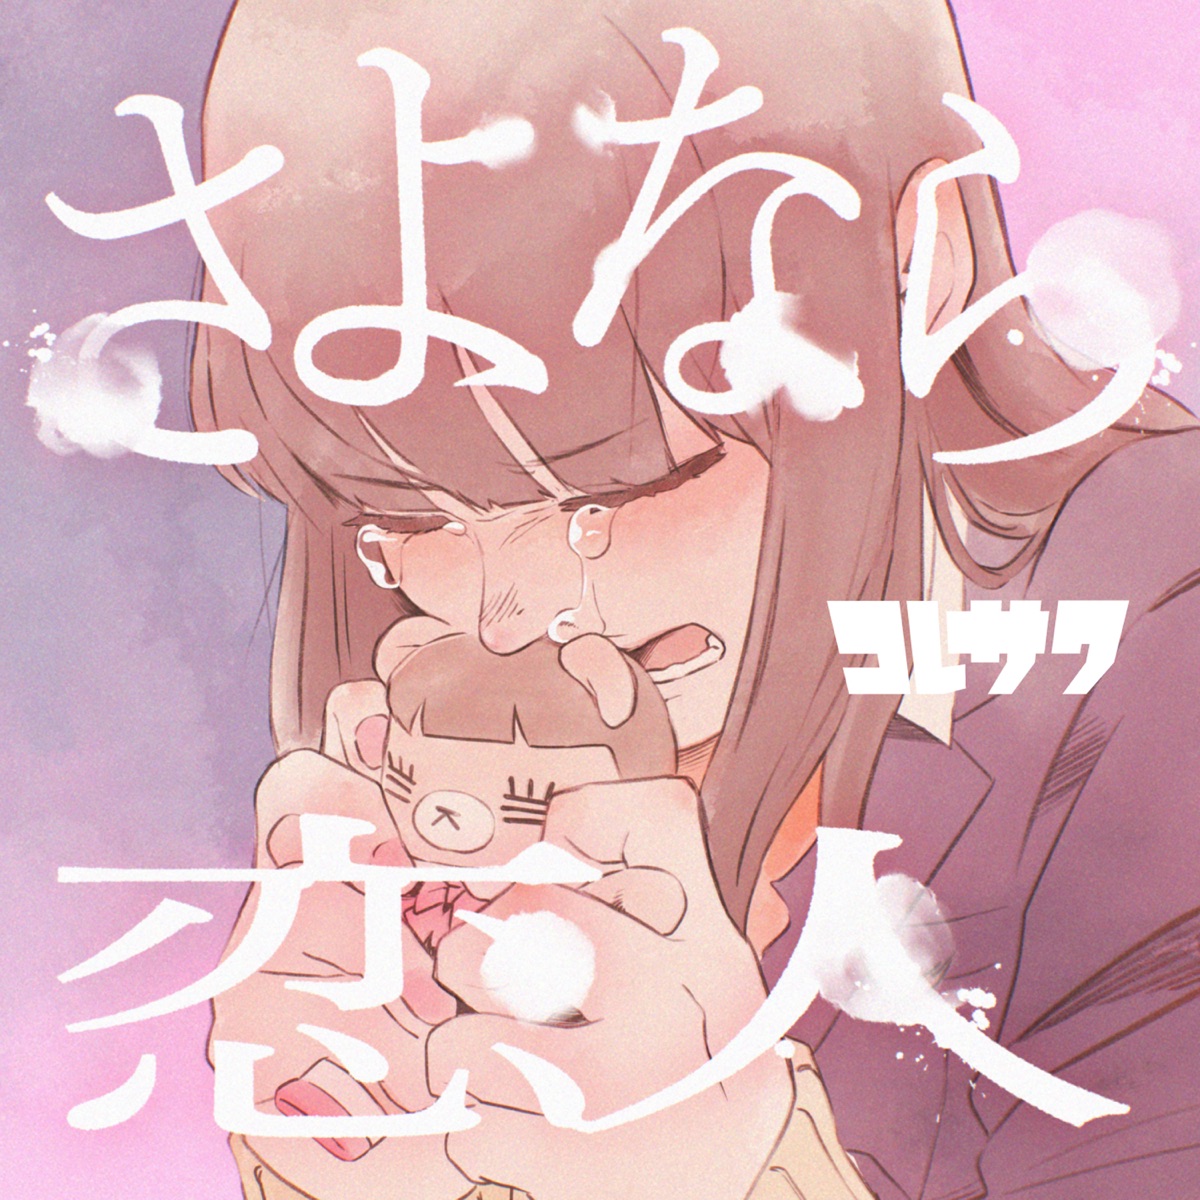 Cover art for『Koresawa - さよなら恋人』from the release『Goodbye Lover